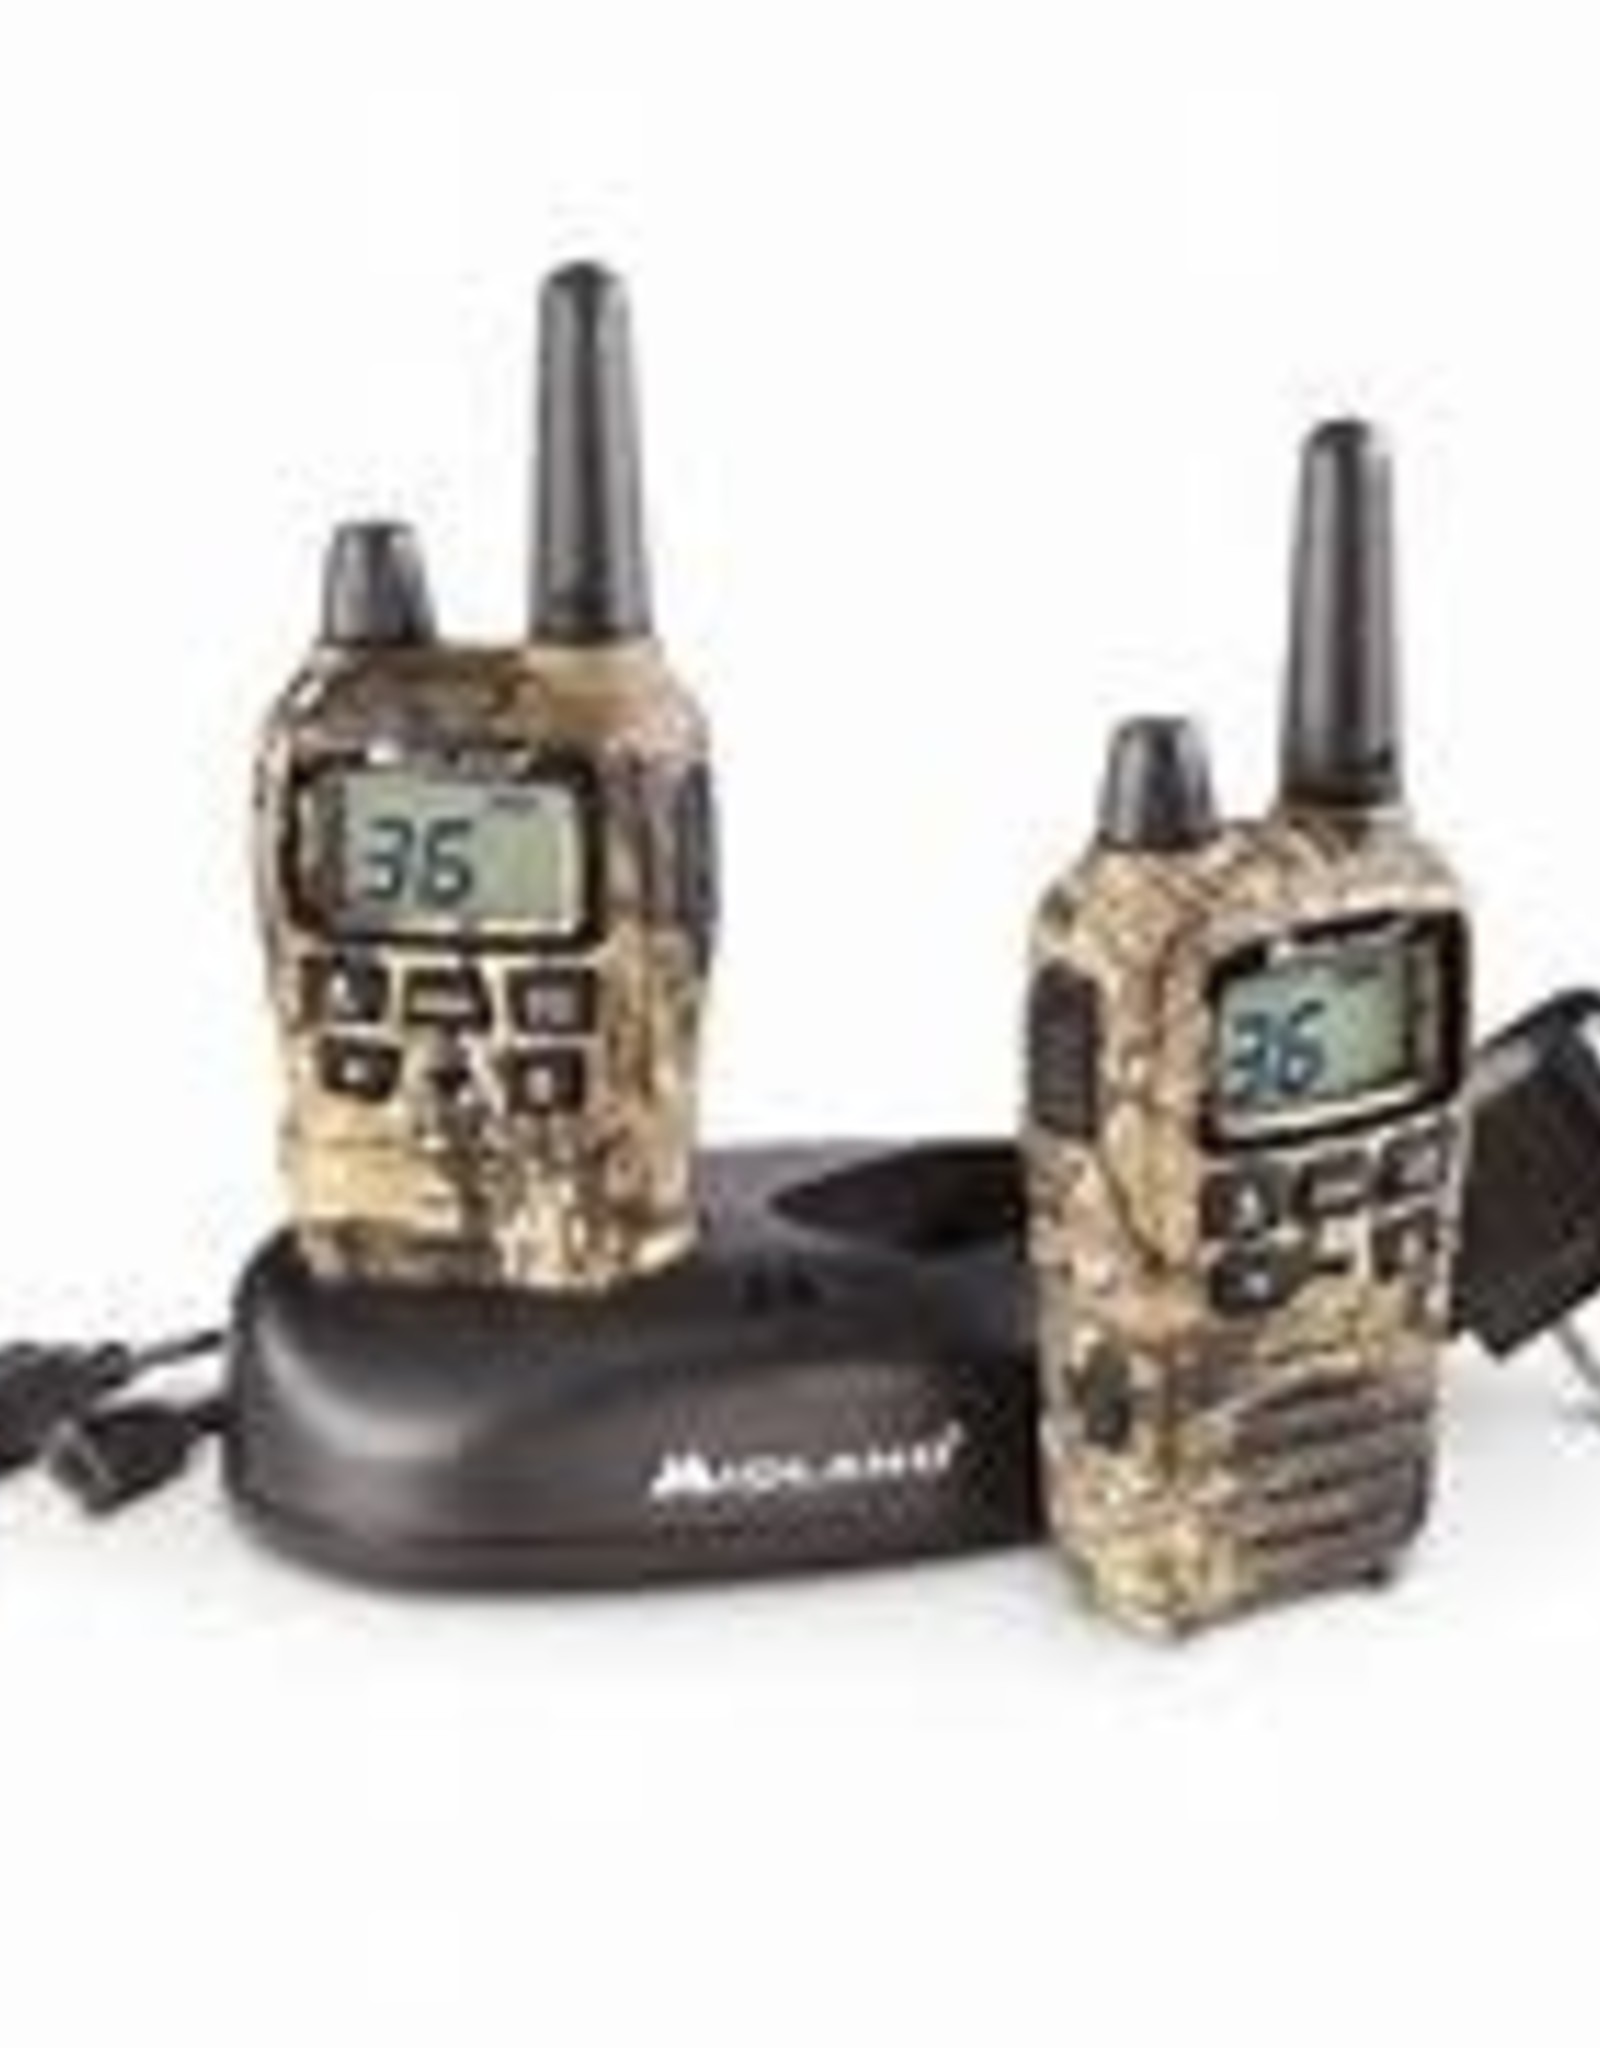 Midland X-Talker Two-Way Radios